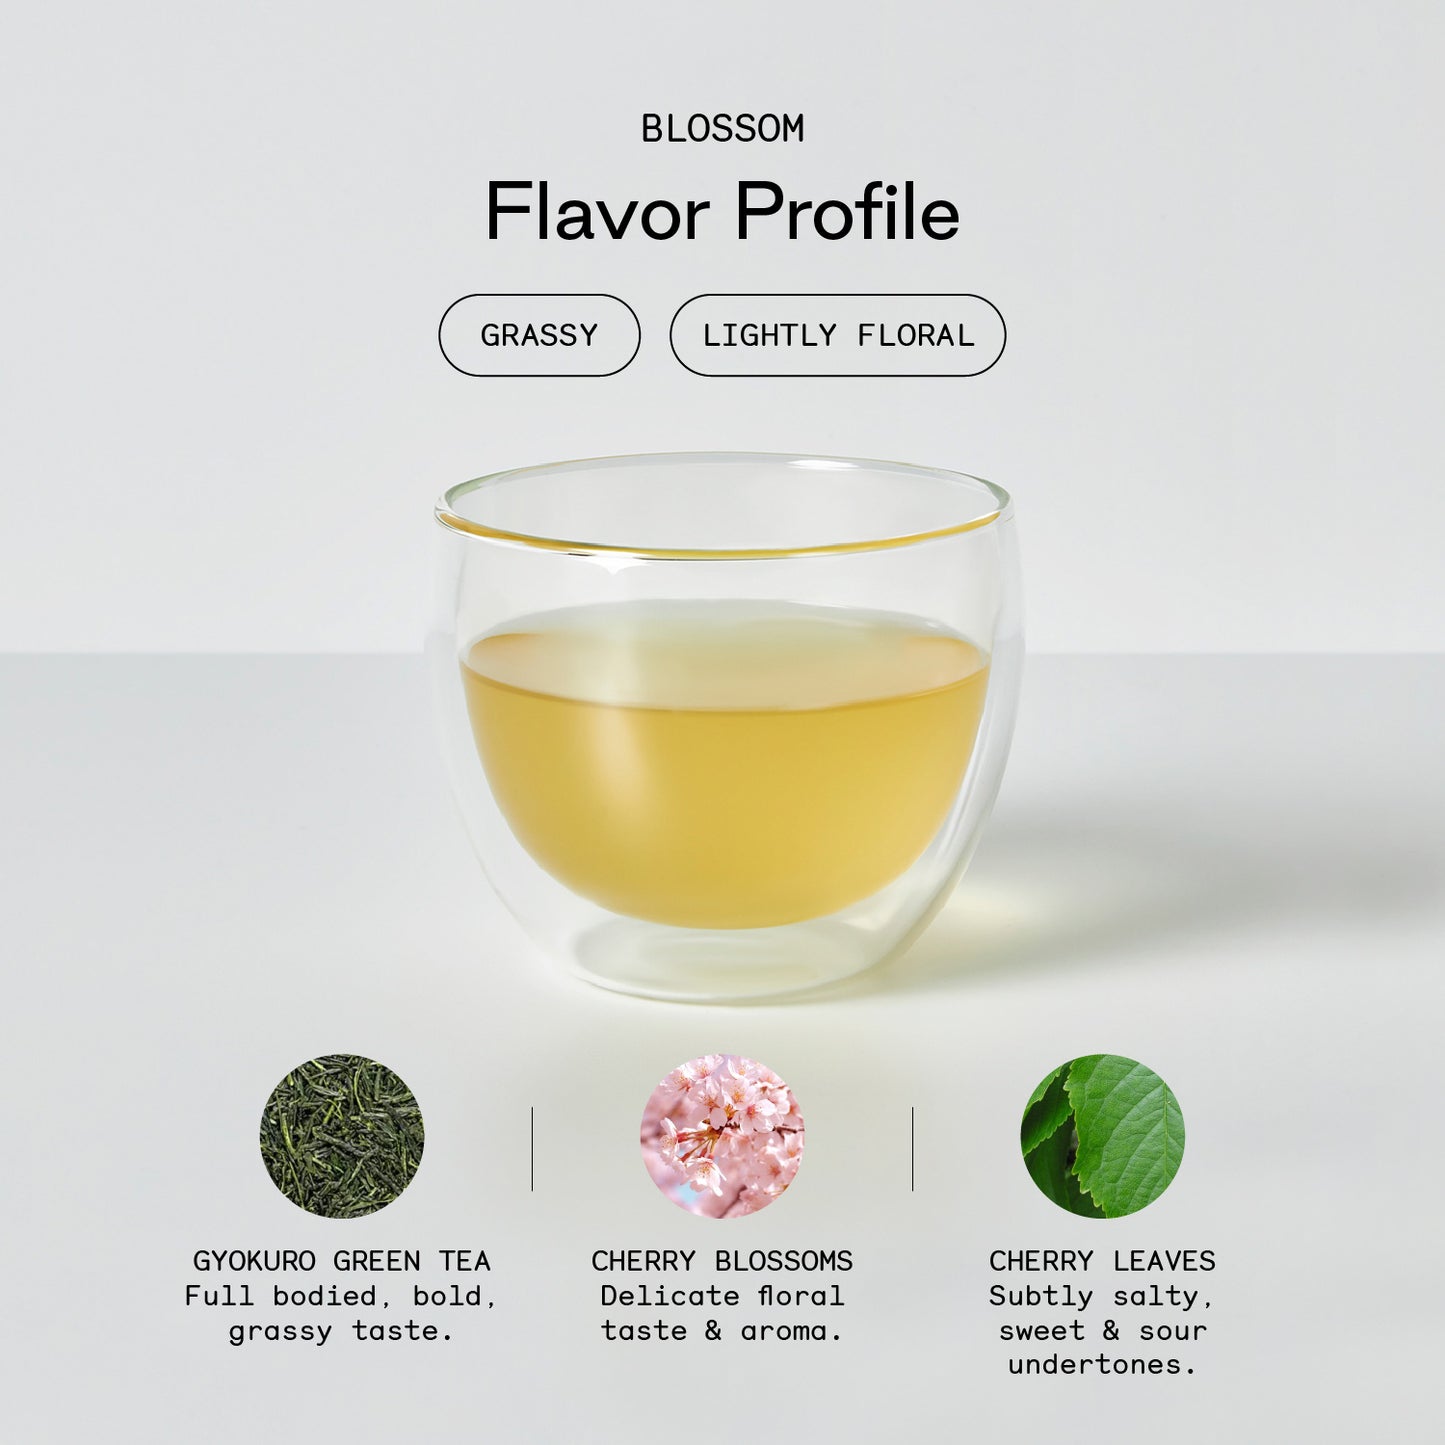 Blossom - Firebelly Tea USA